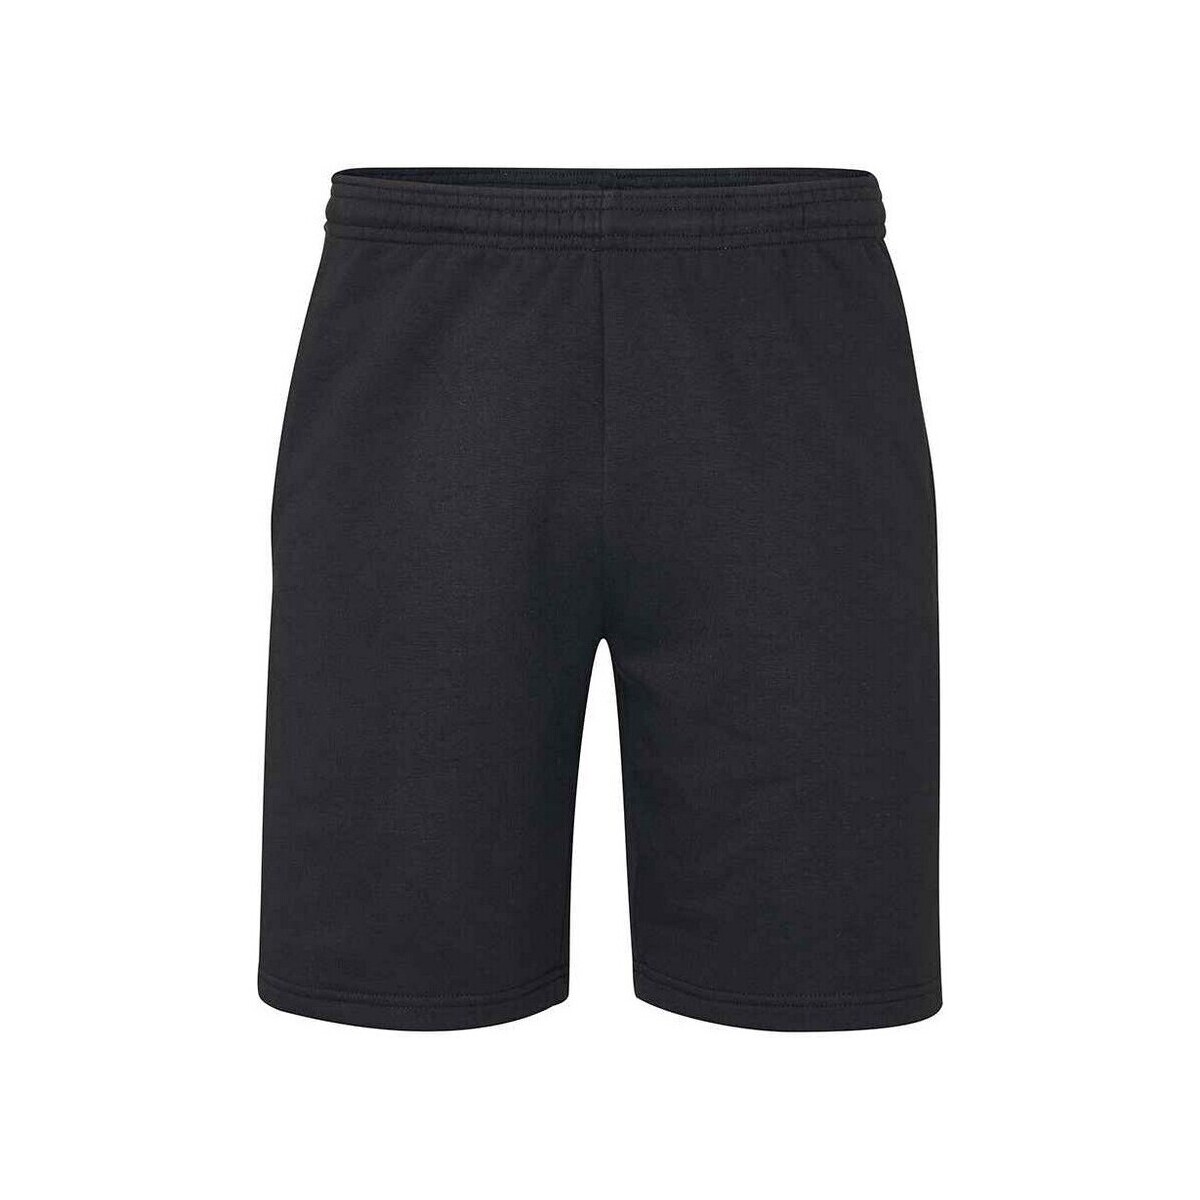 Vêtements Shorts / Bermudas Mantis Essential Noir